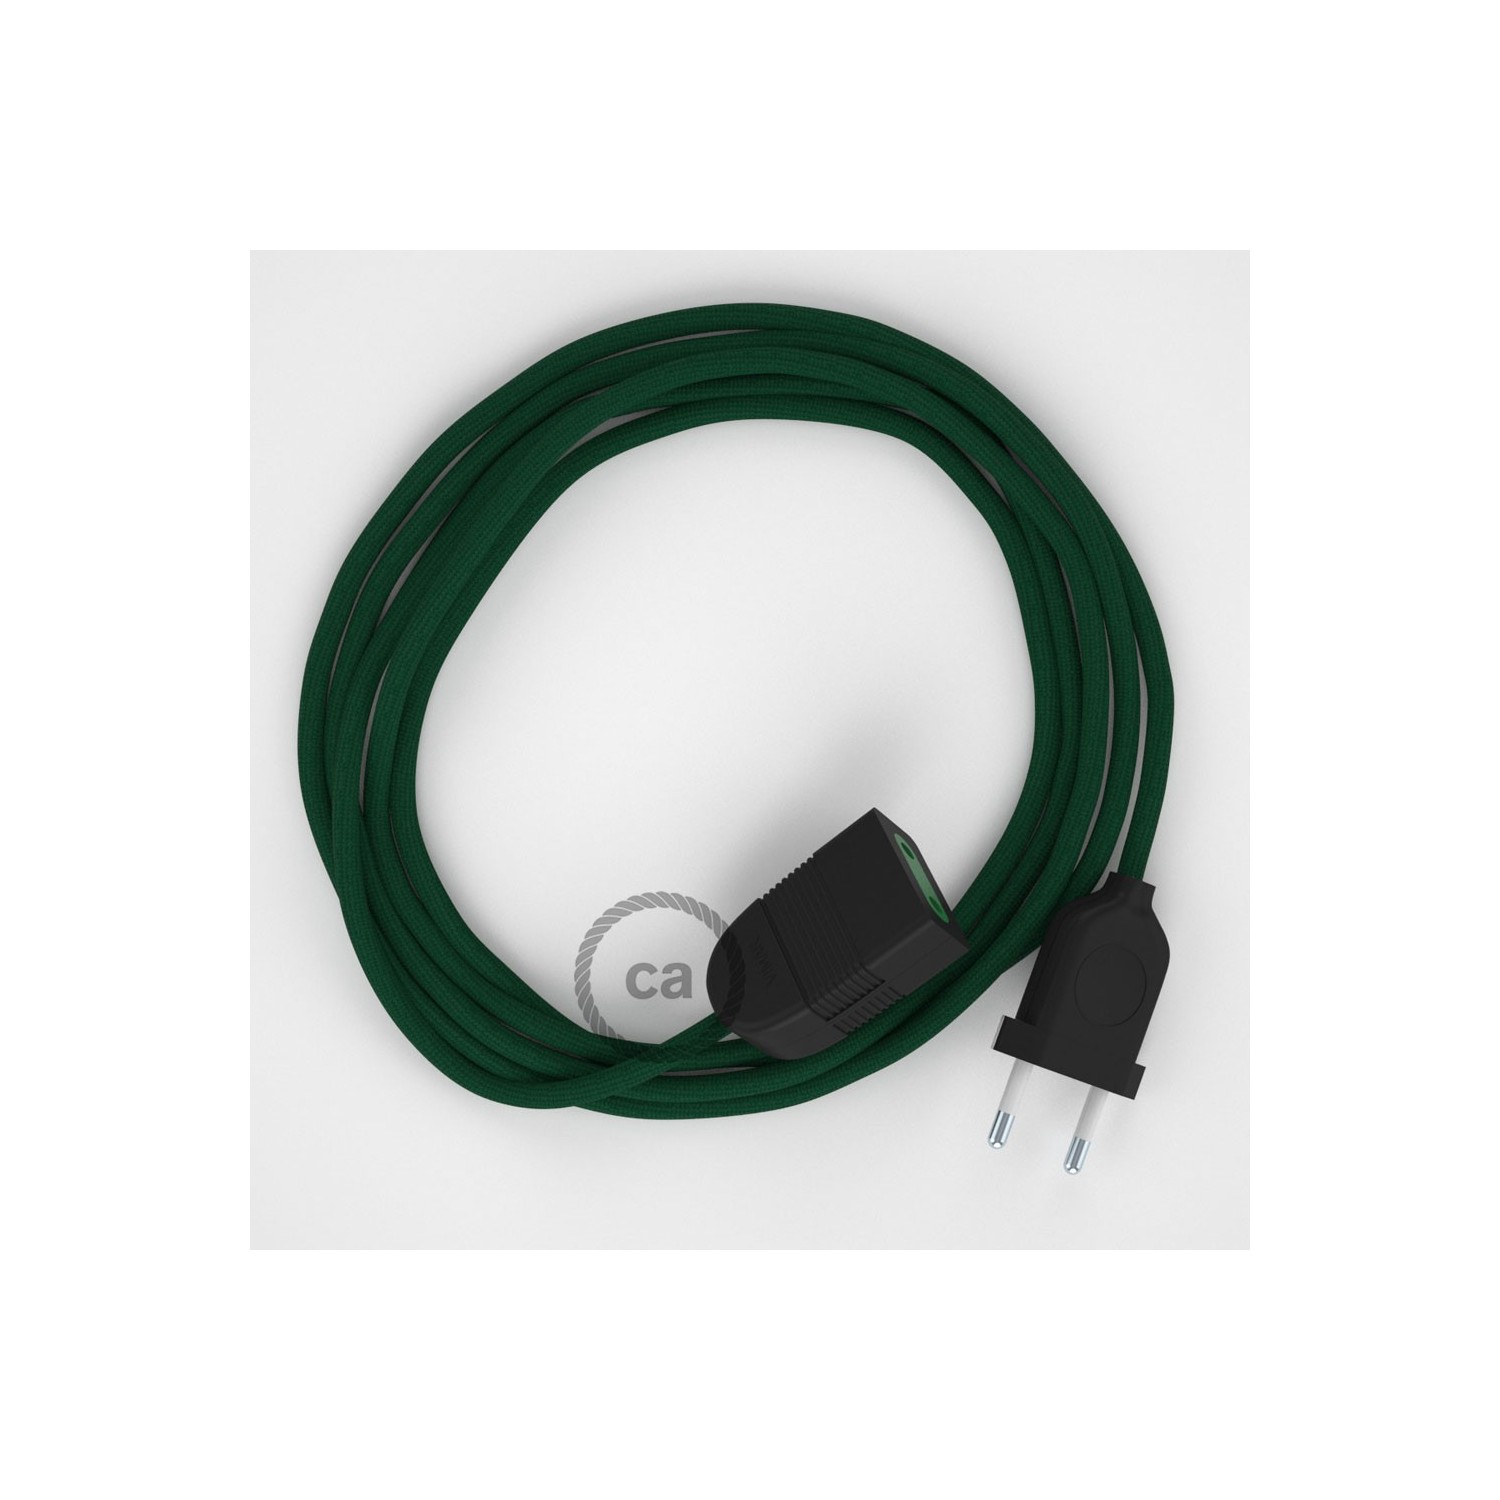 Rallonge électrique avec câble textile RM21 Effet Soie Vert Foncé 2P 10A Made in Italy.